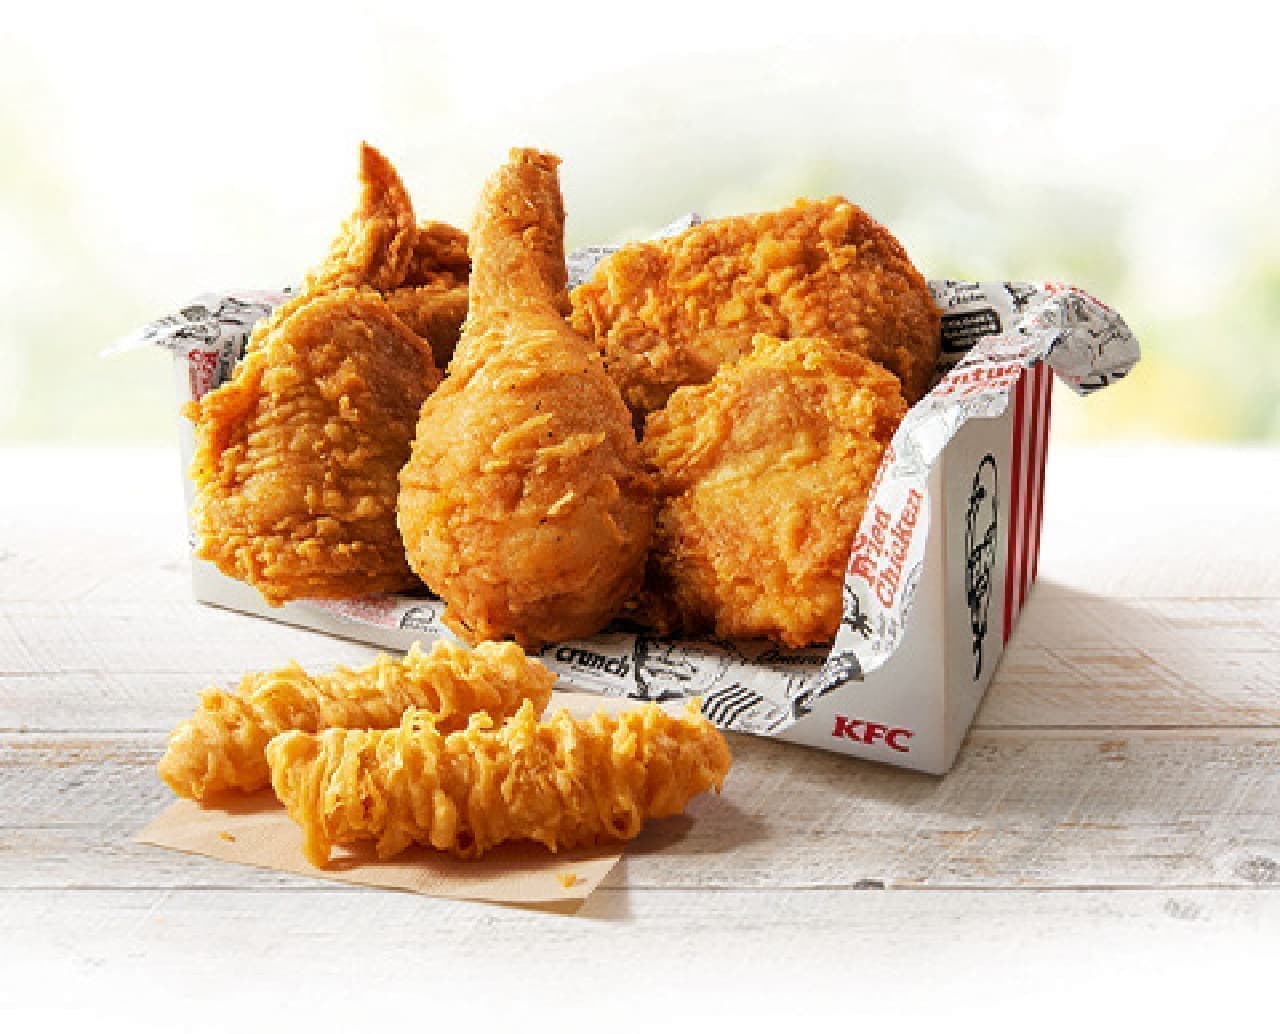 KFC "Inaugural Pack